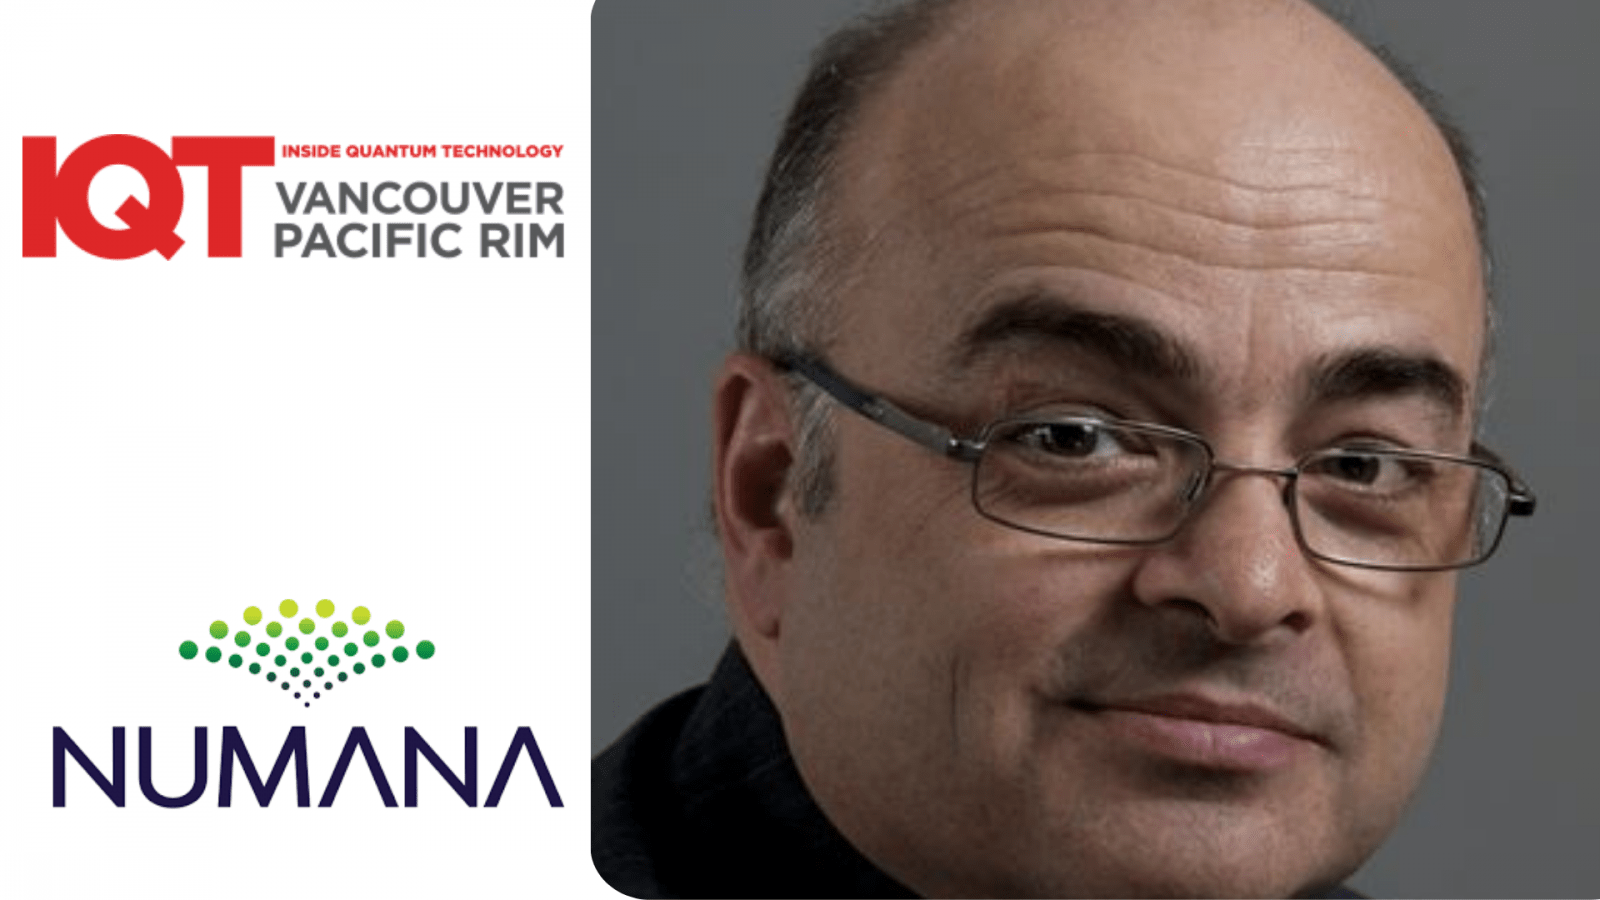 Numana Quantum Communication Initiative Coordinator, Jacques Mc Neill, is an IQT Vancouver/Pacific Rim 2024 Speaker